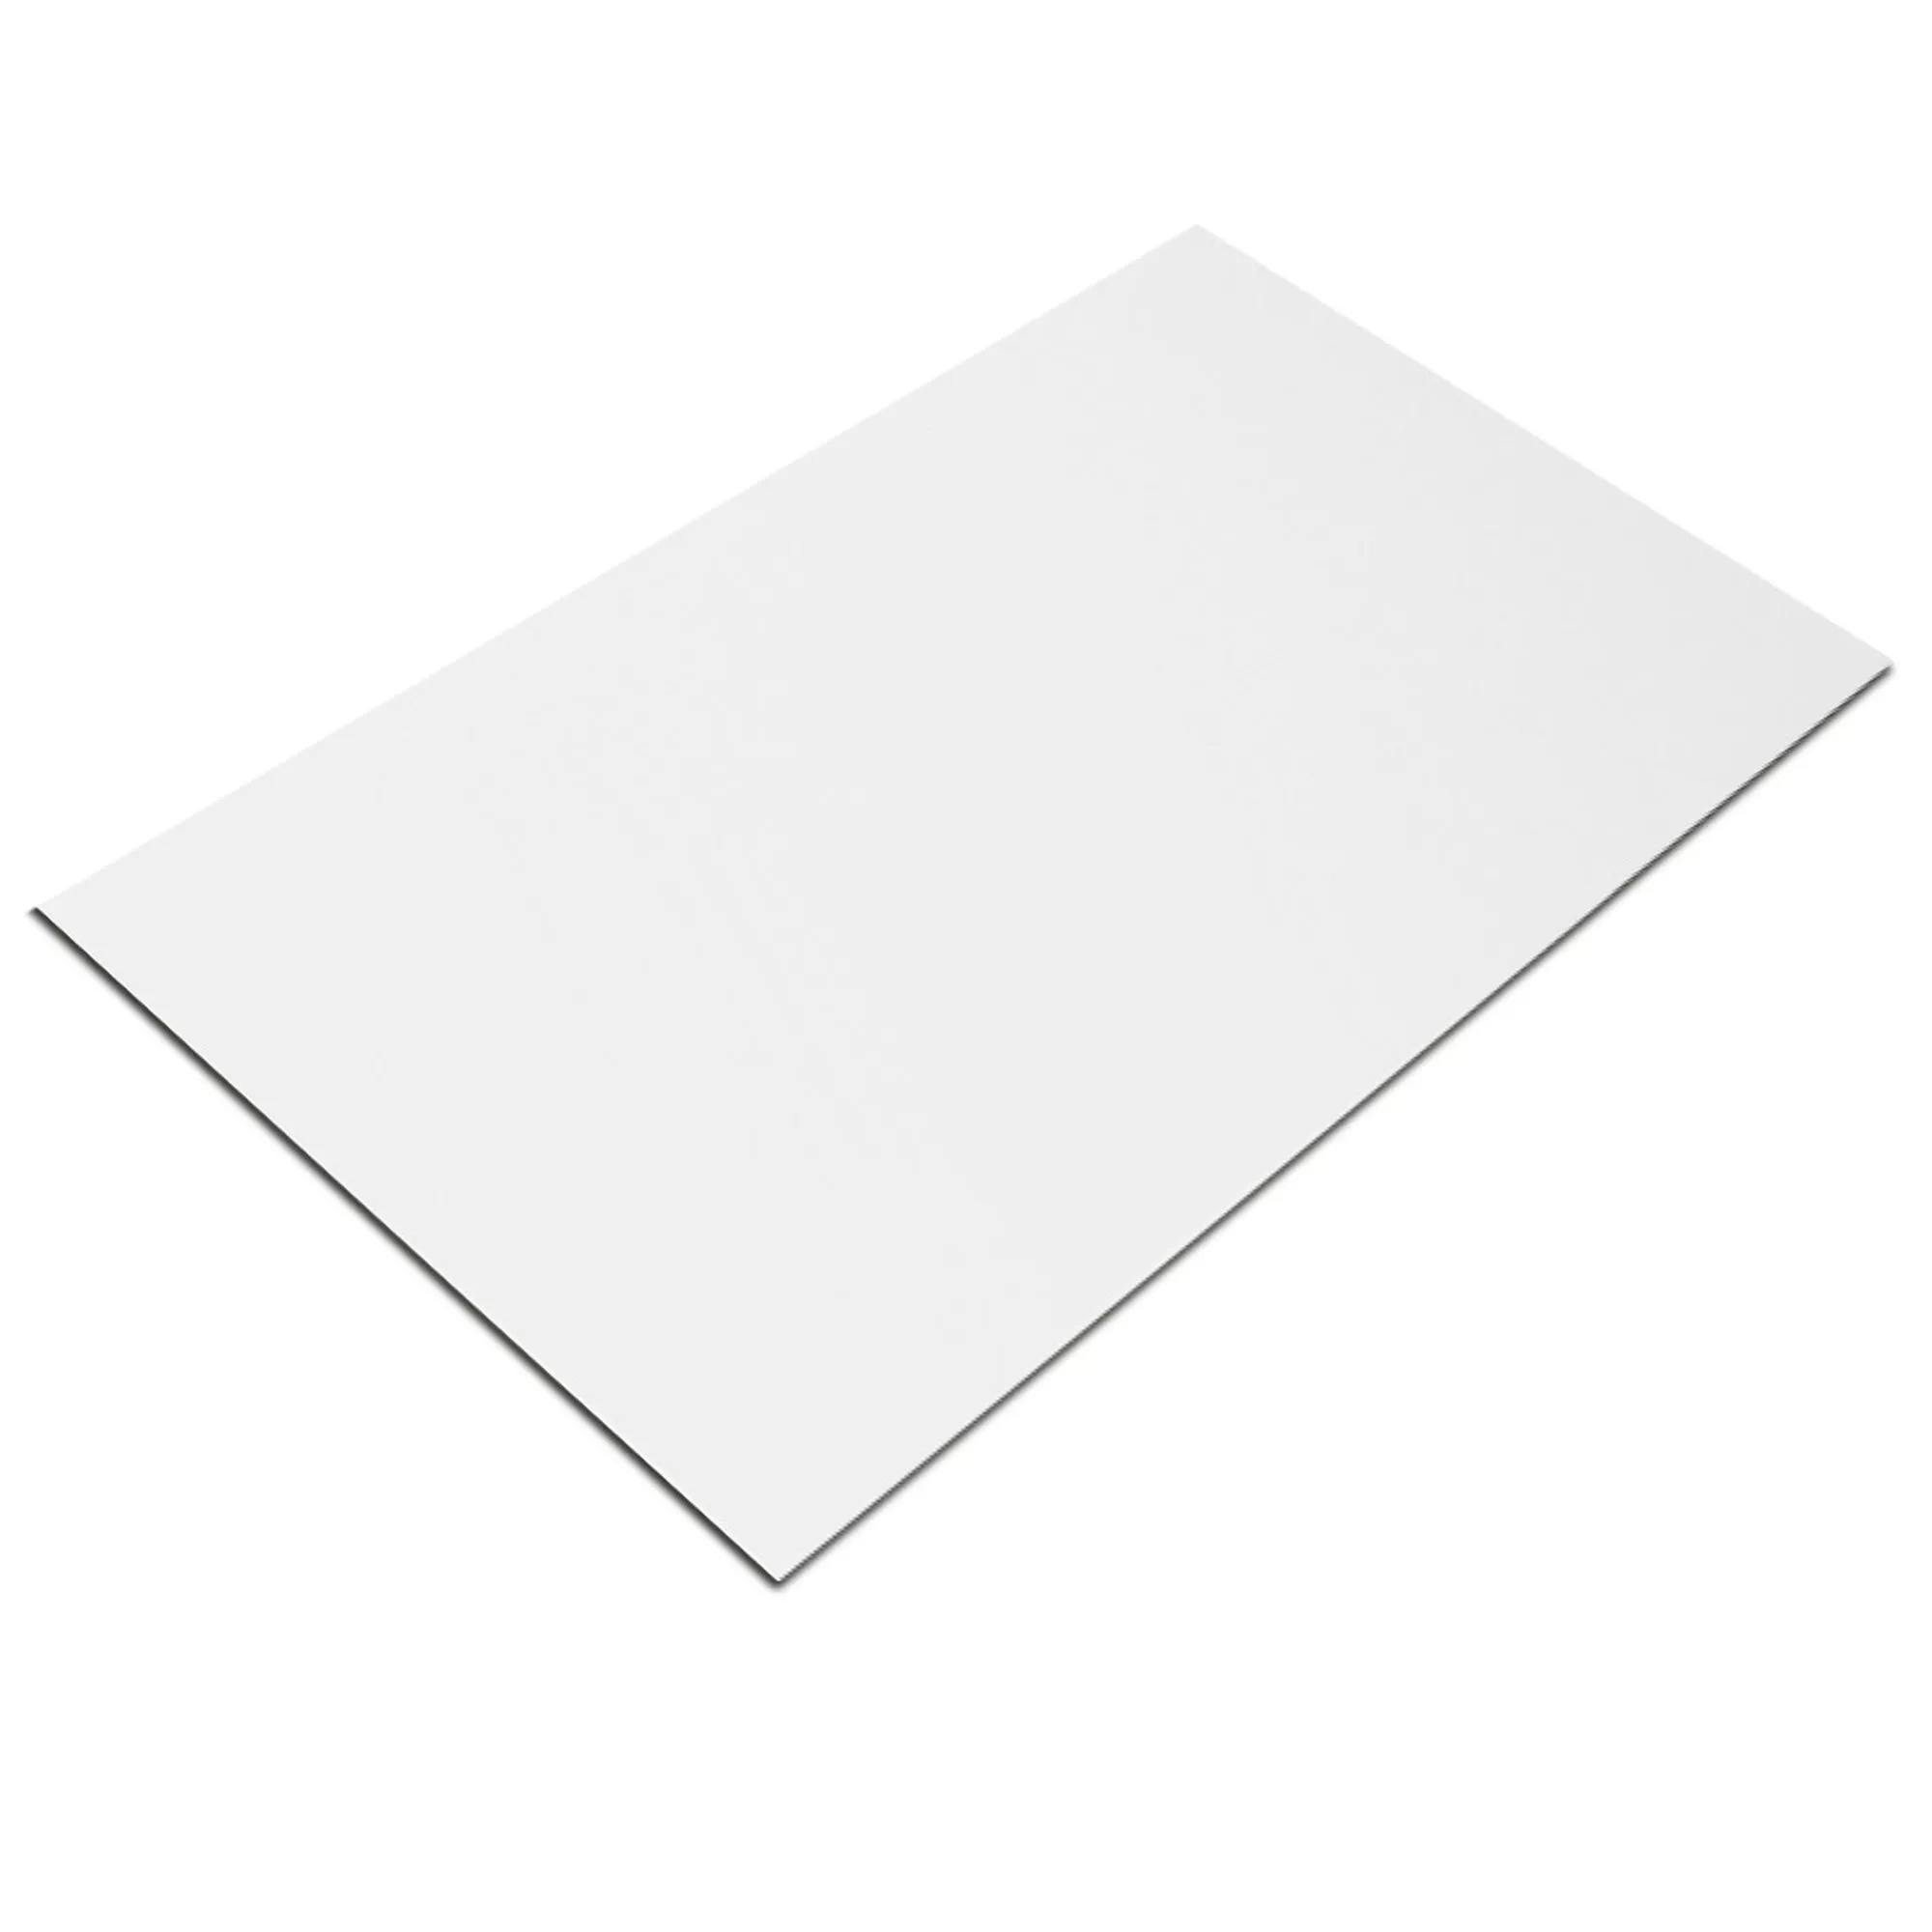 Próbka Płytki Ścienne Fenway Biały Matowy 20x50cm